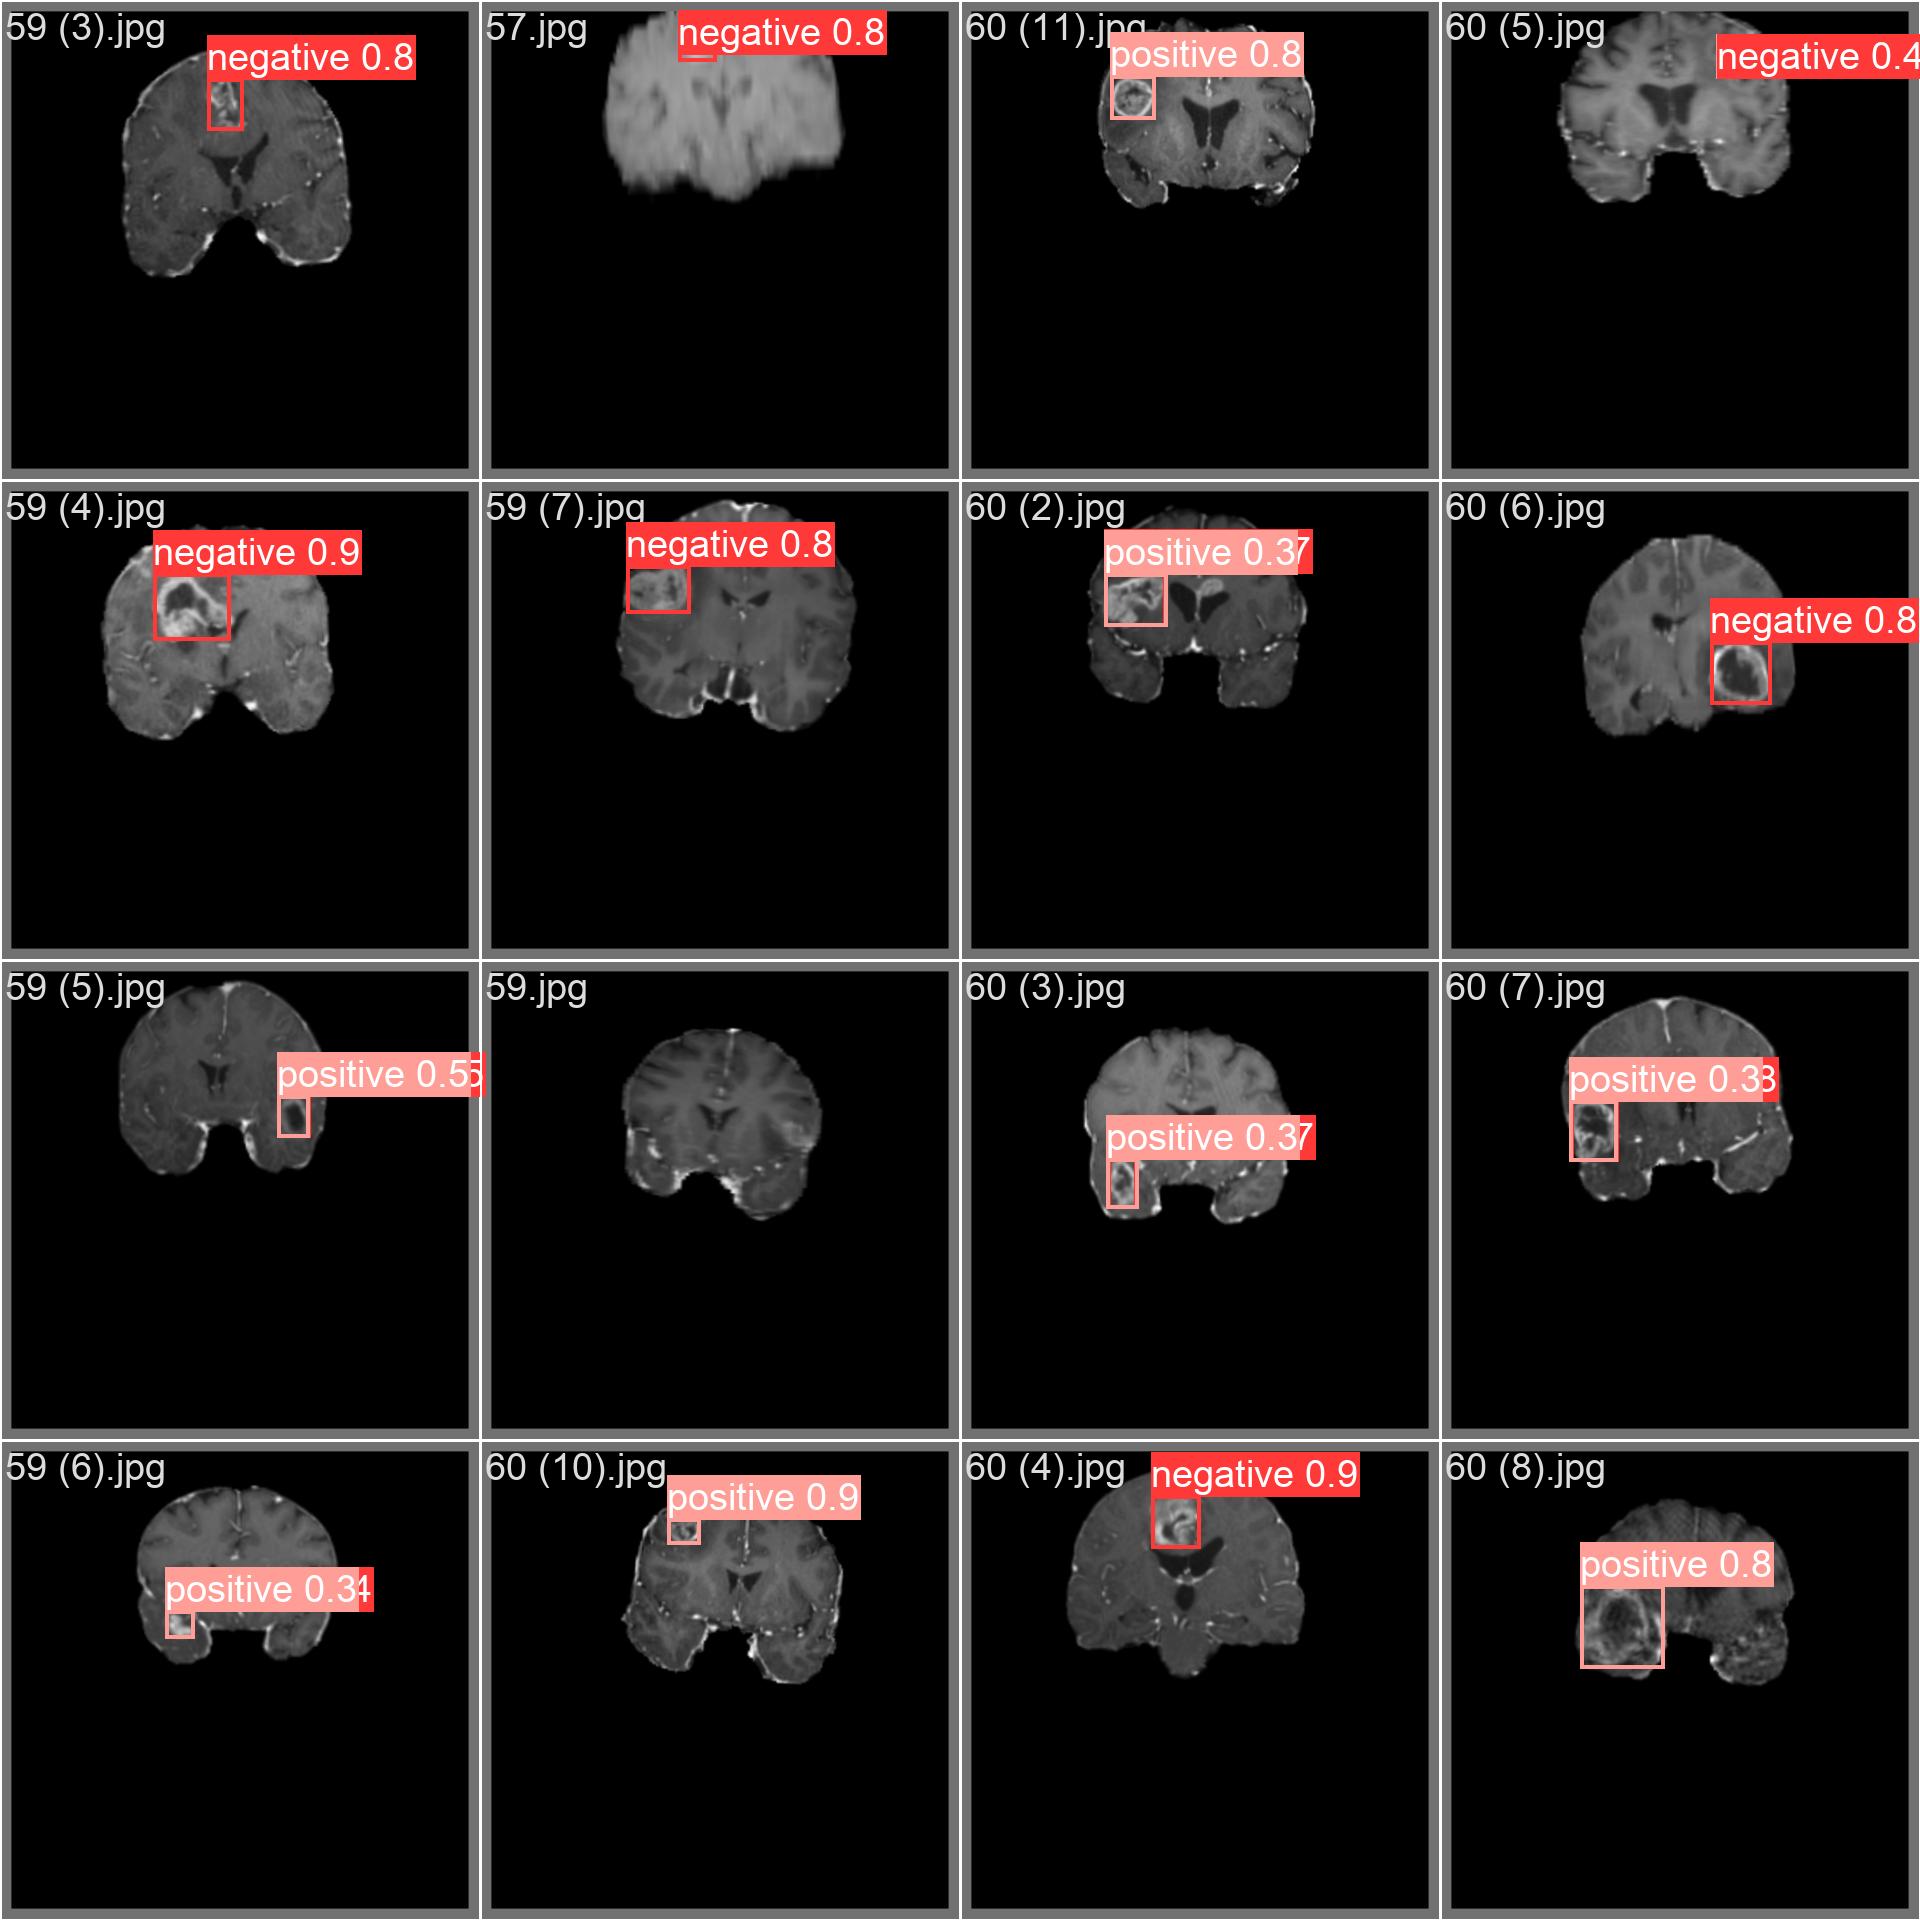 Imagem de amostra do conjunto de dados de tumores cerebrais